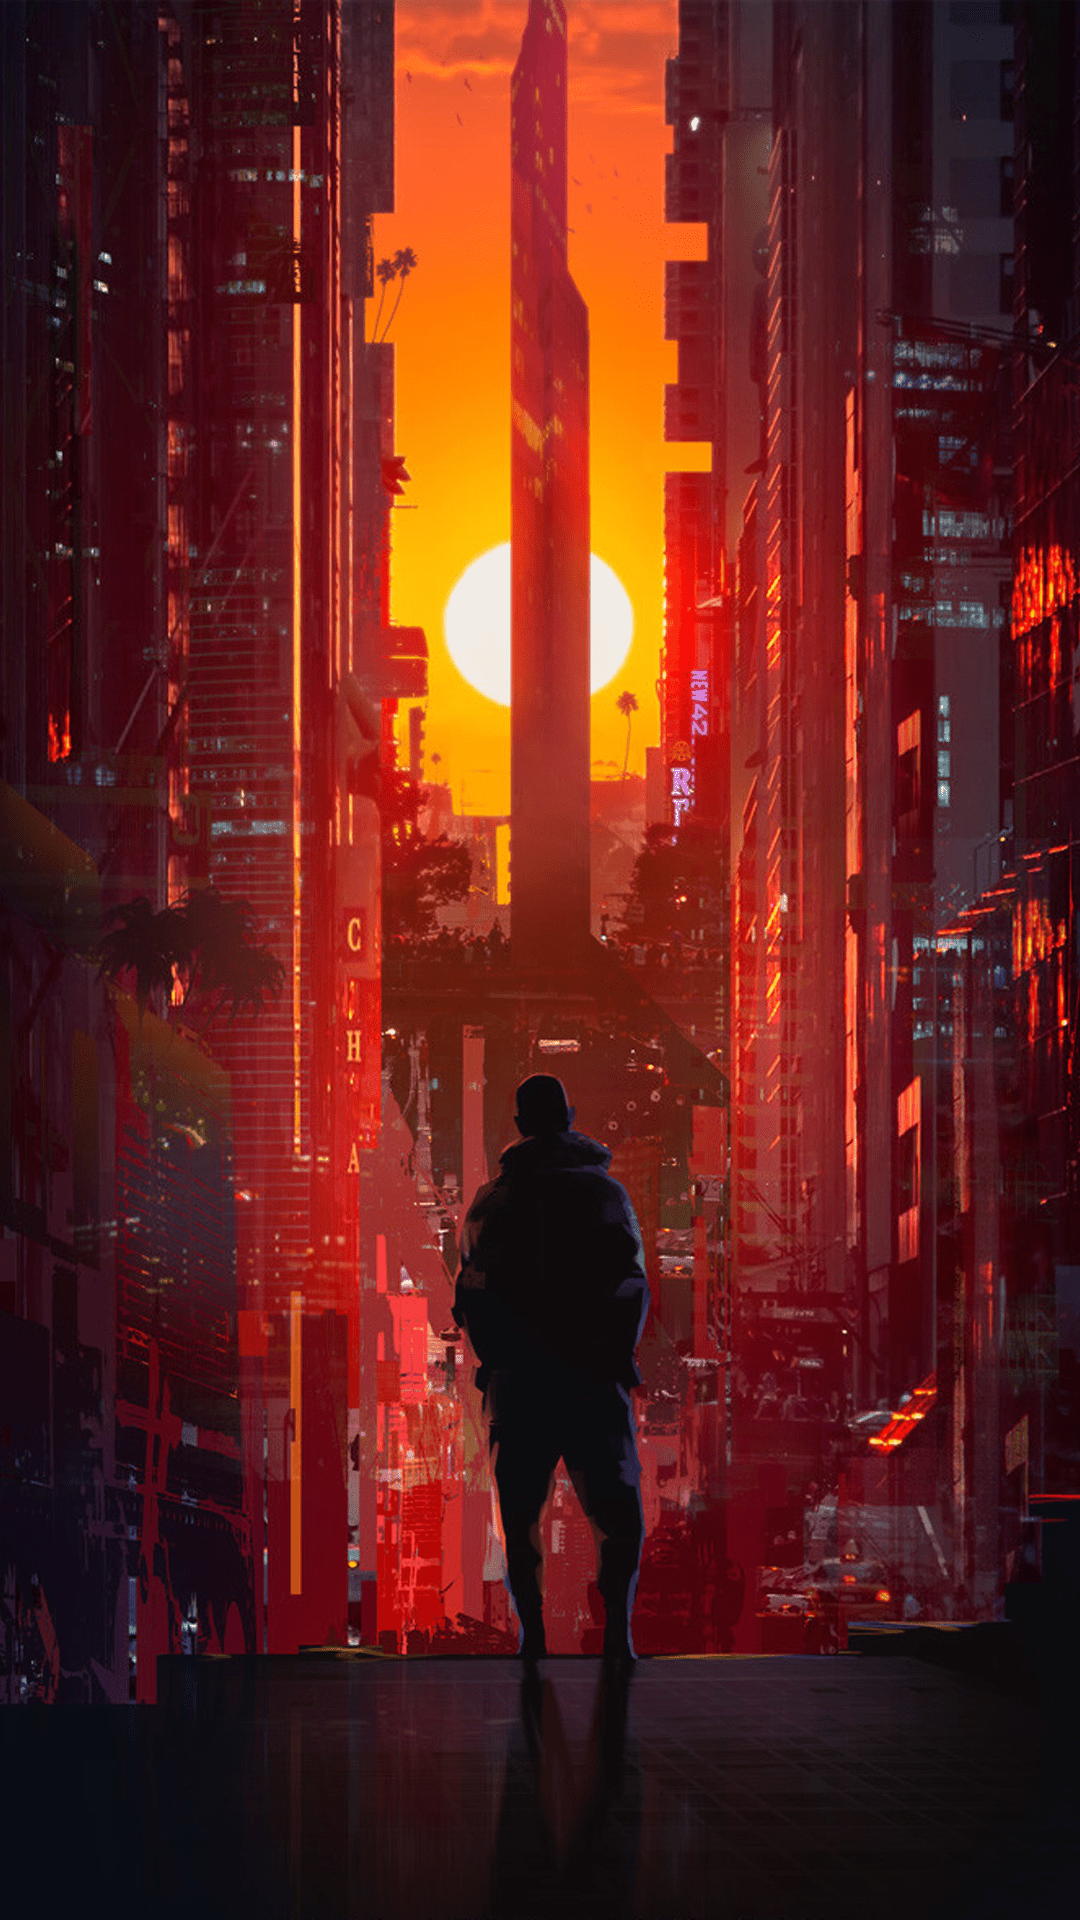 A man standing in a cyberpunk city at sunset - Cyberpunk 2077